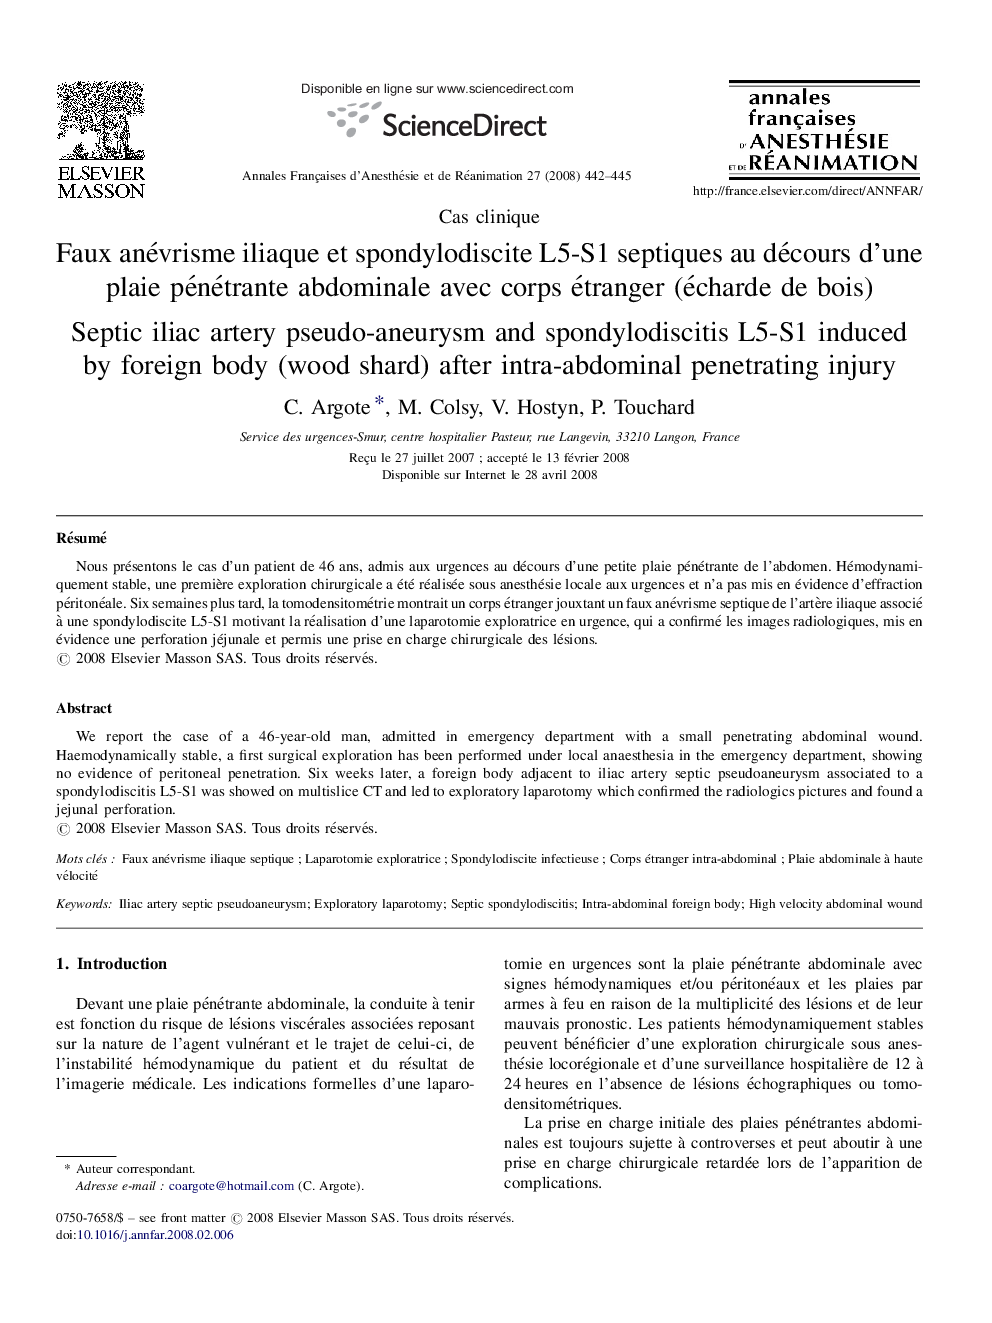 Faux anévrisme iliaque et spondylodiscite L5-S1 septiques au décours d’une plaie pénétrante abdominale avec corps étranger (écharde de bois)